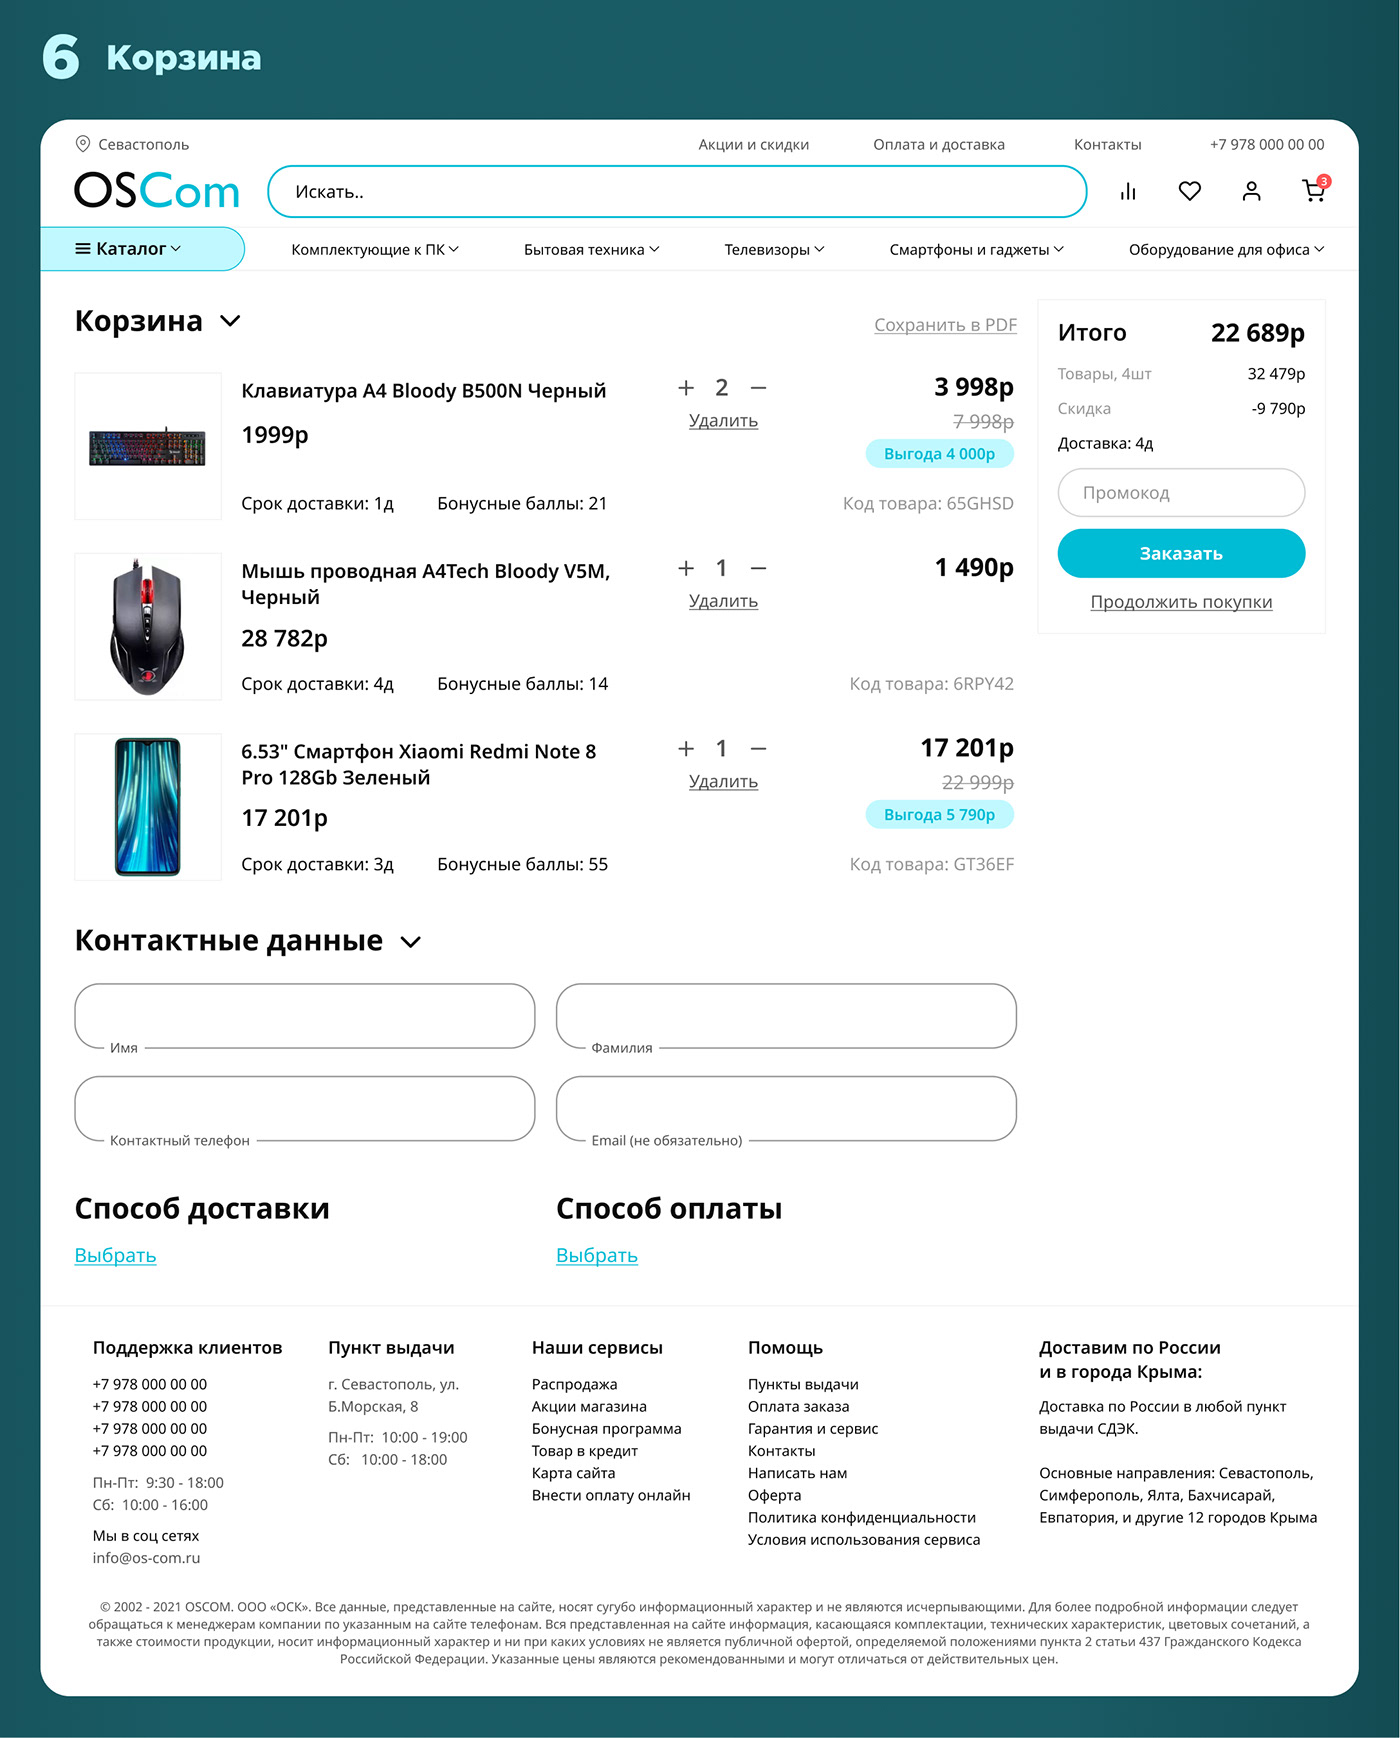 E COMMERCE Online shop uxui web interface Website